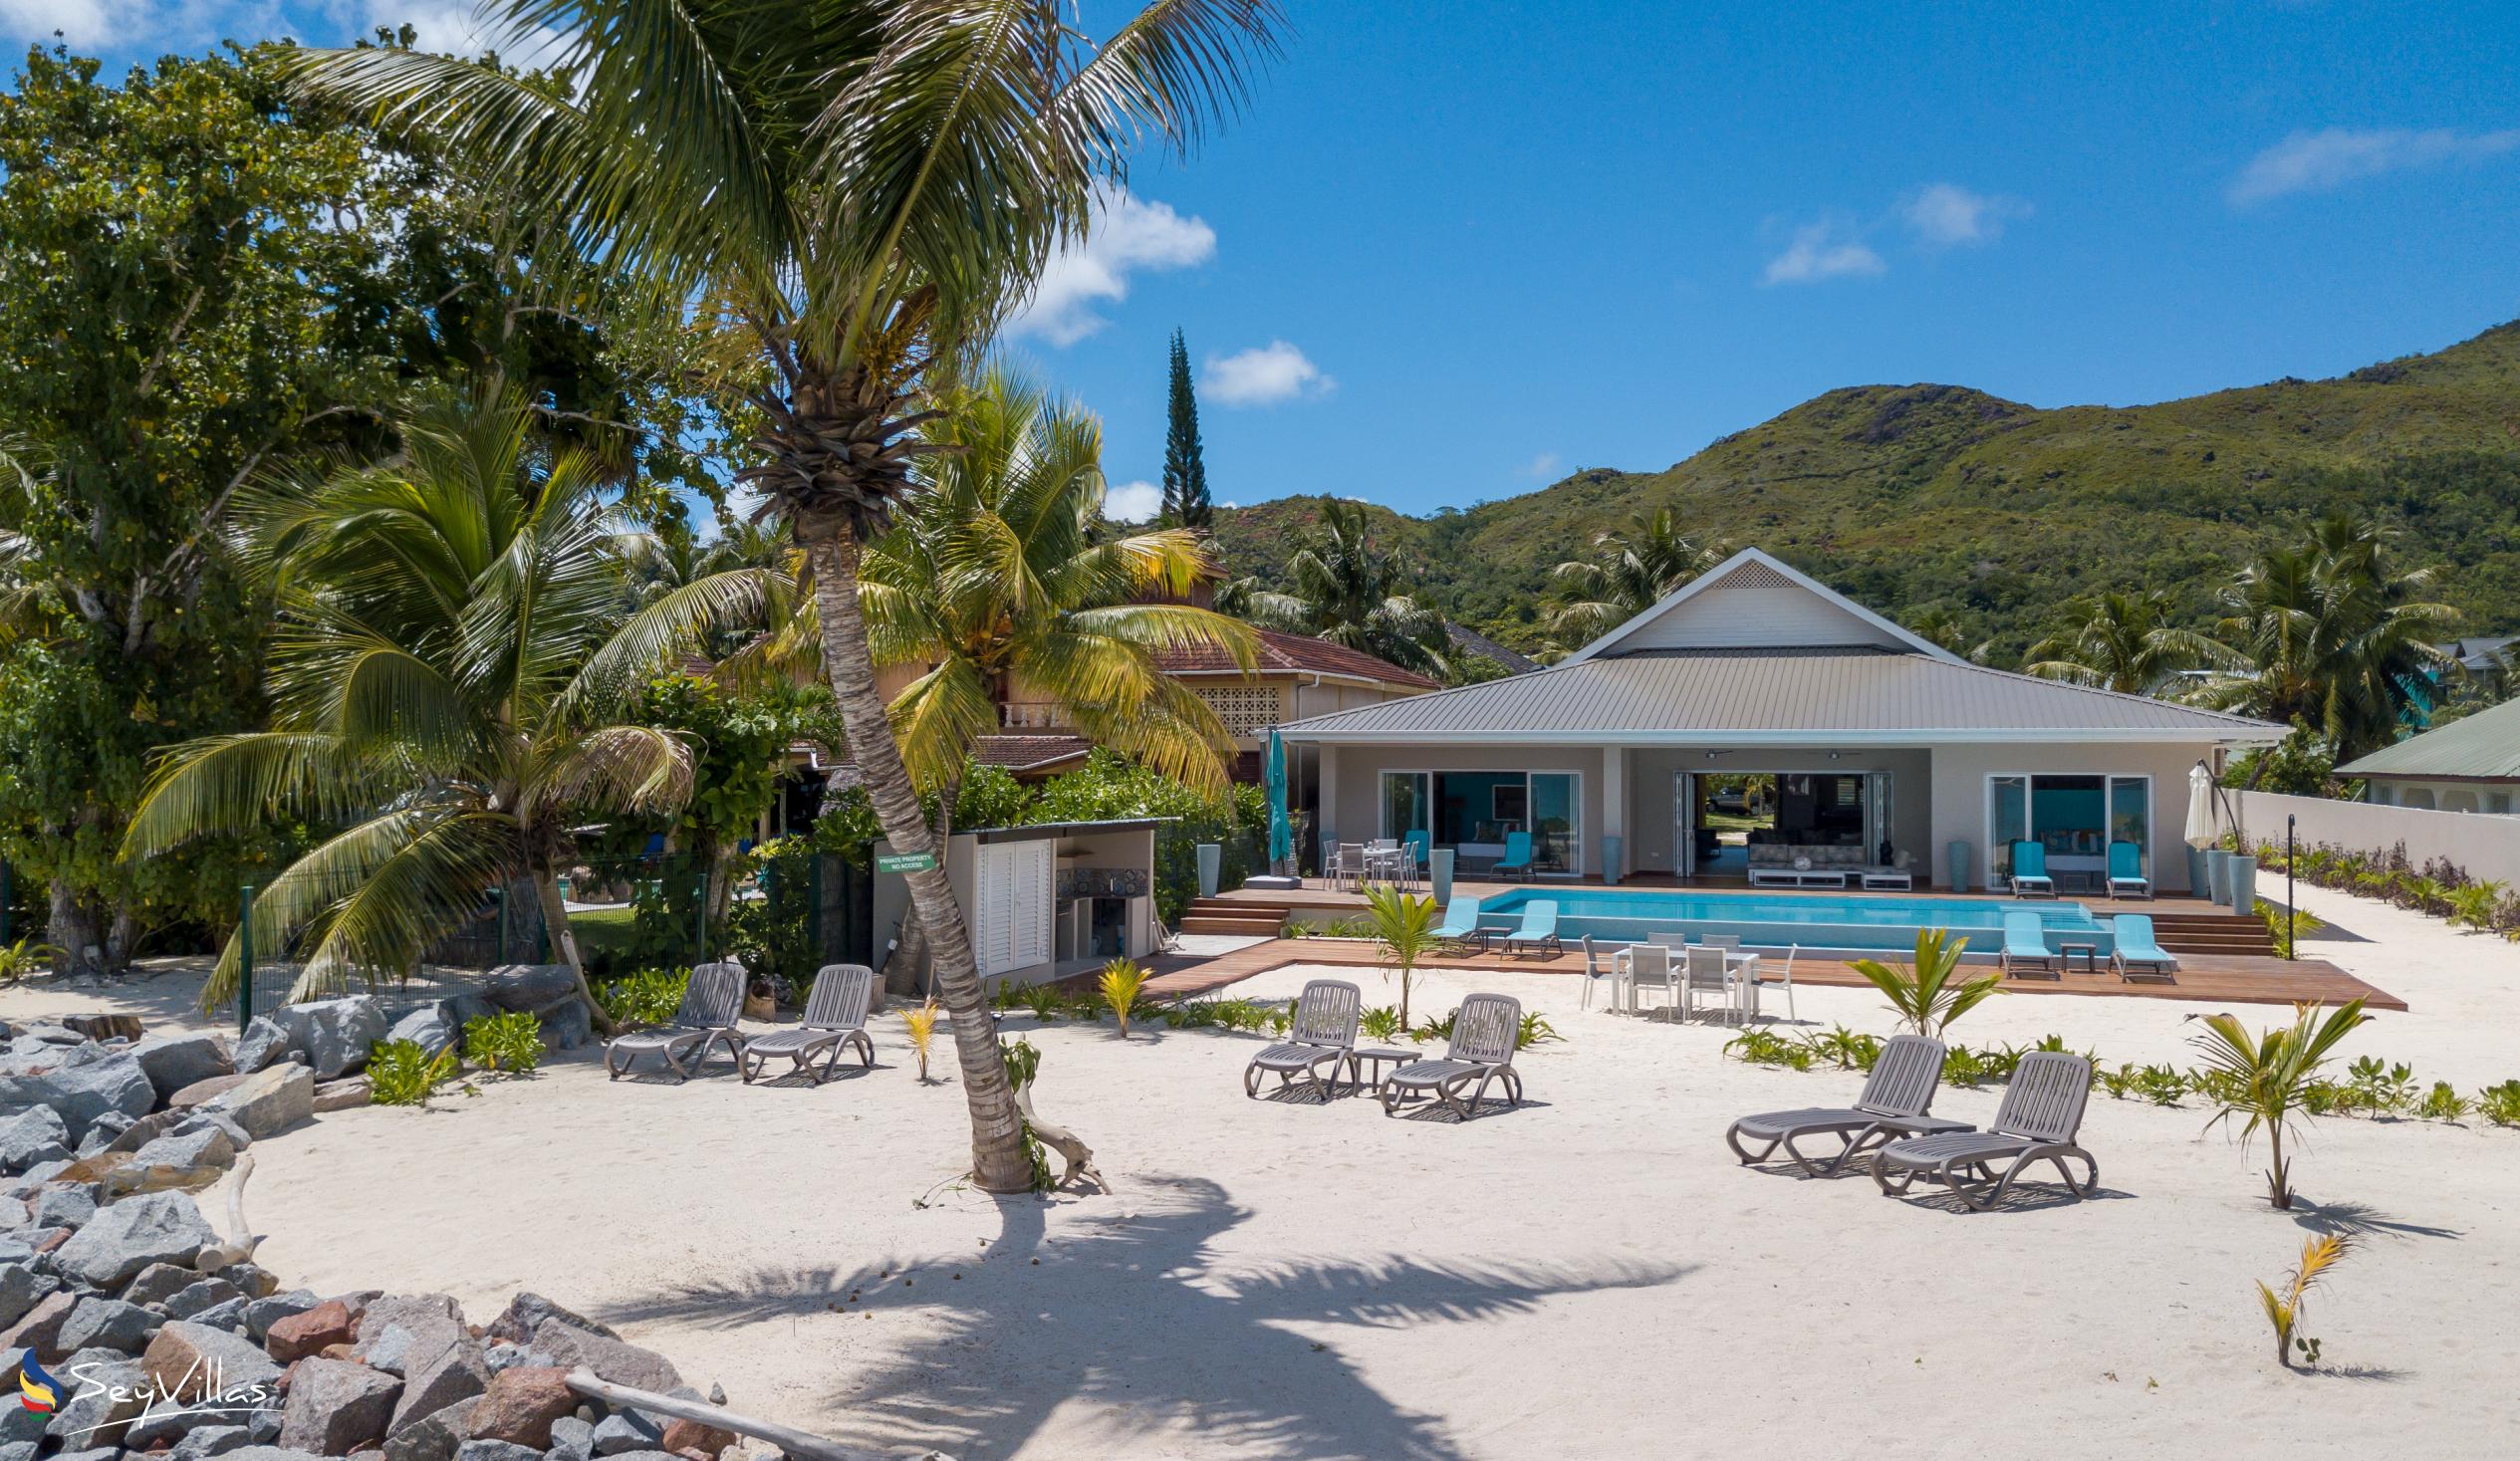 Photo 10: Villas Coco Beach - Outdoor area - Praslin (Seychelles)